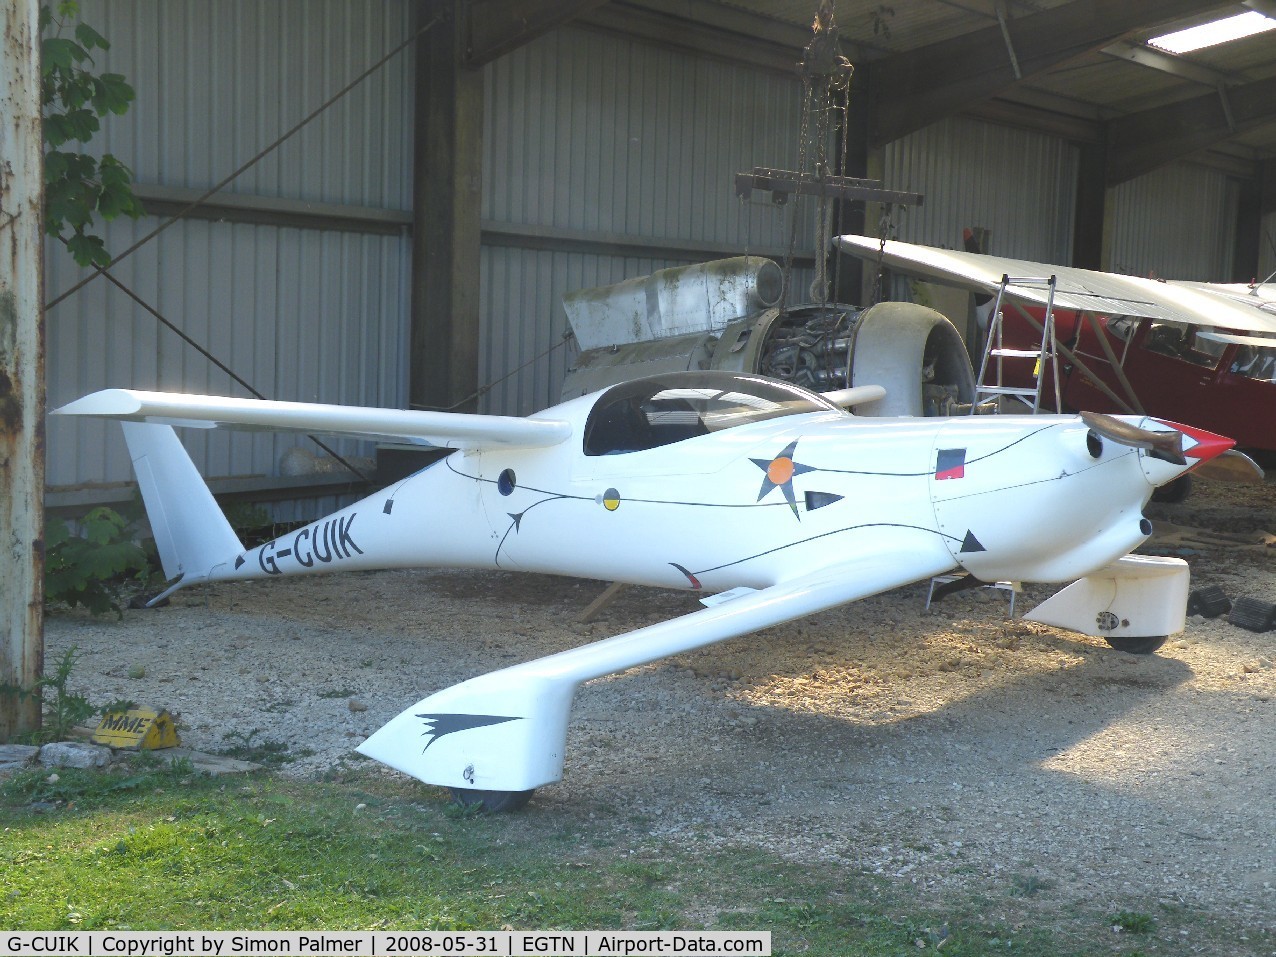 G-CUIK, 2004 QAC Quickie Q200 C/N PFA 094A-11204, Quickie in the hangar at Enstone